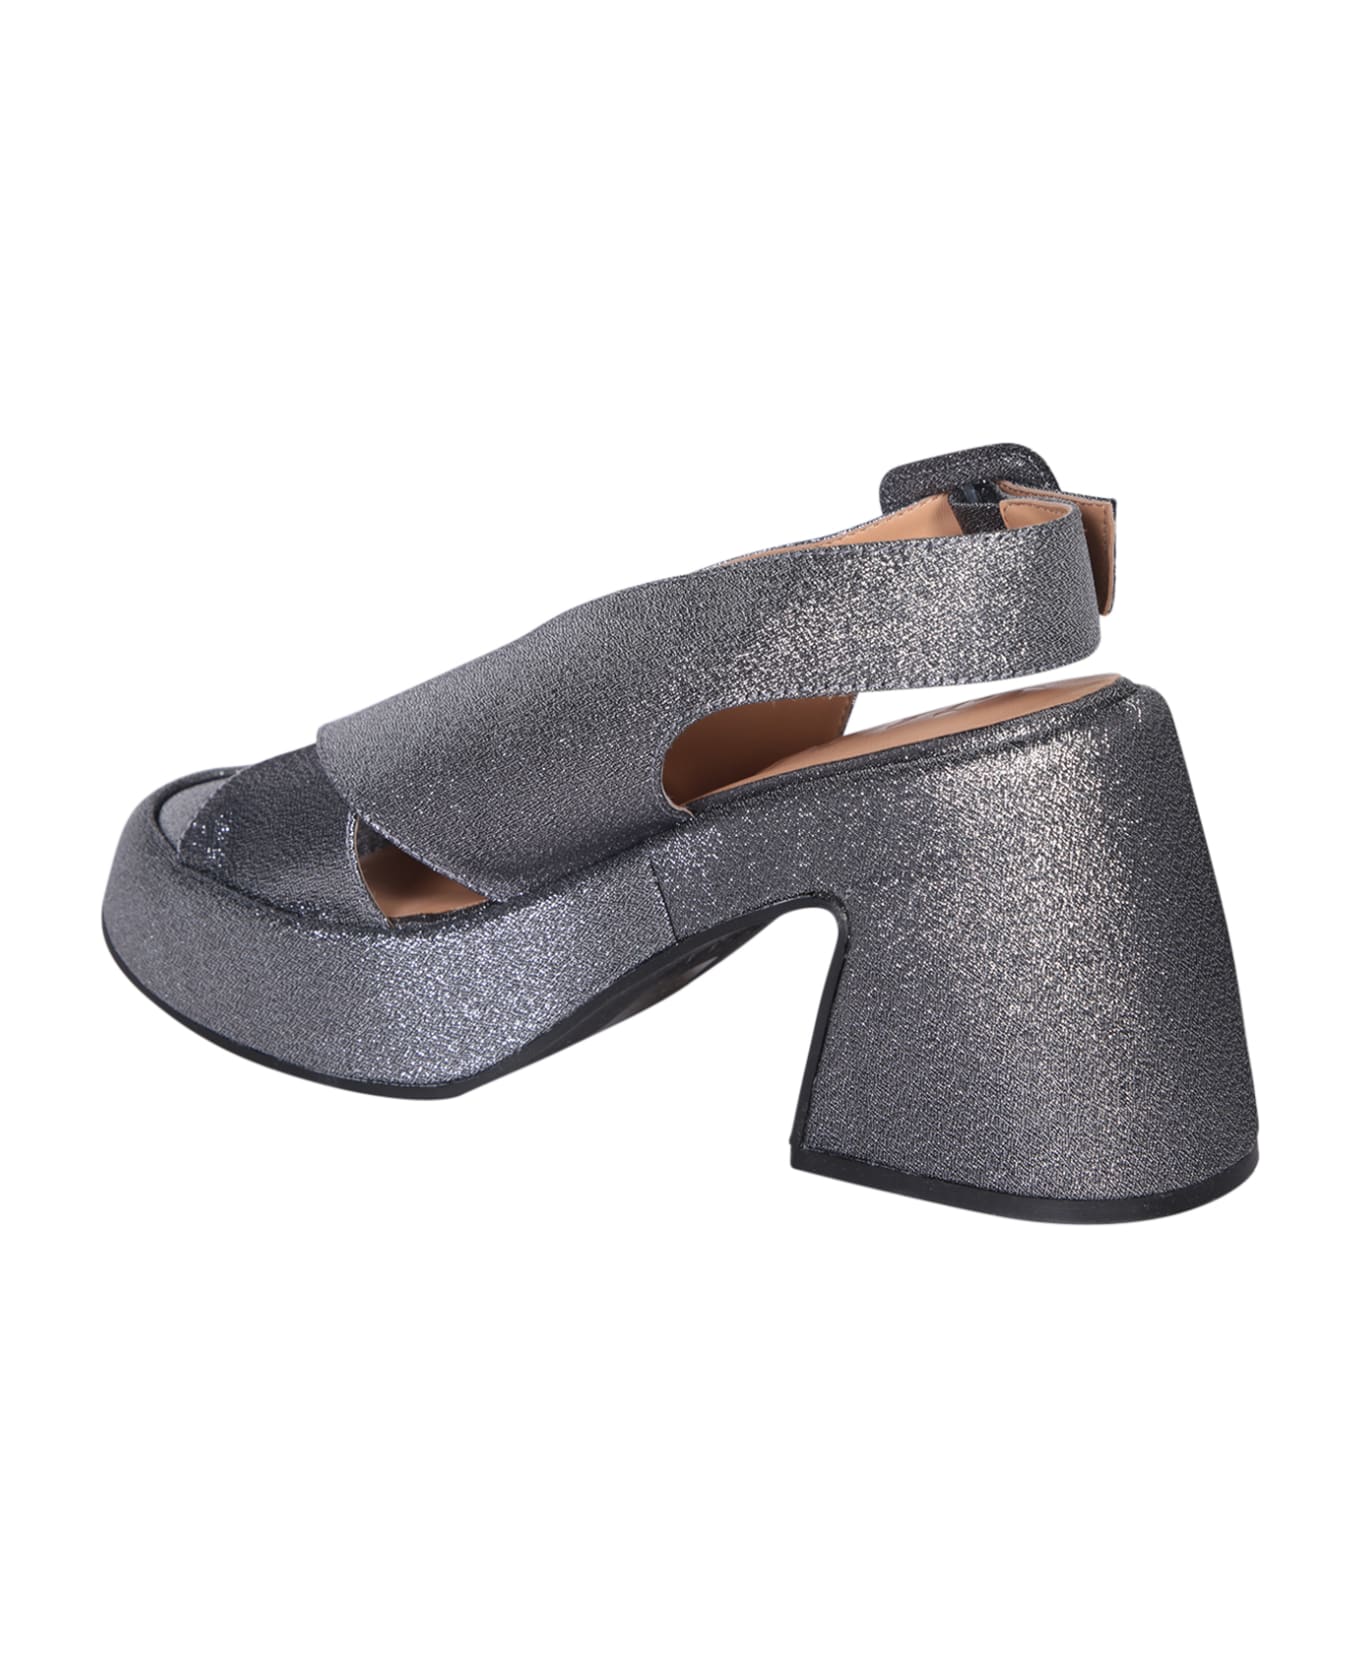 Ganni Silver Platform Sandals - Metallic